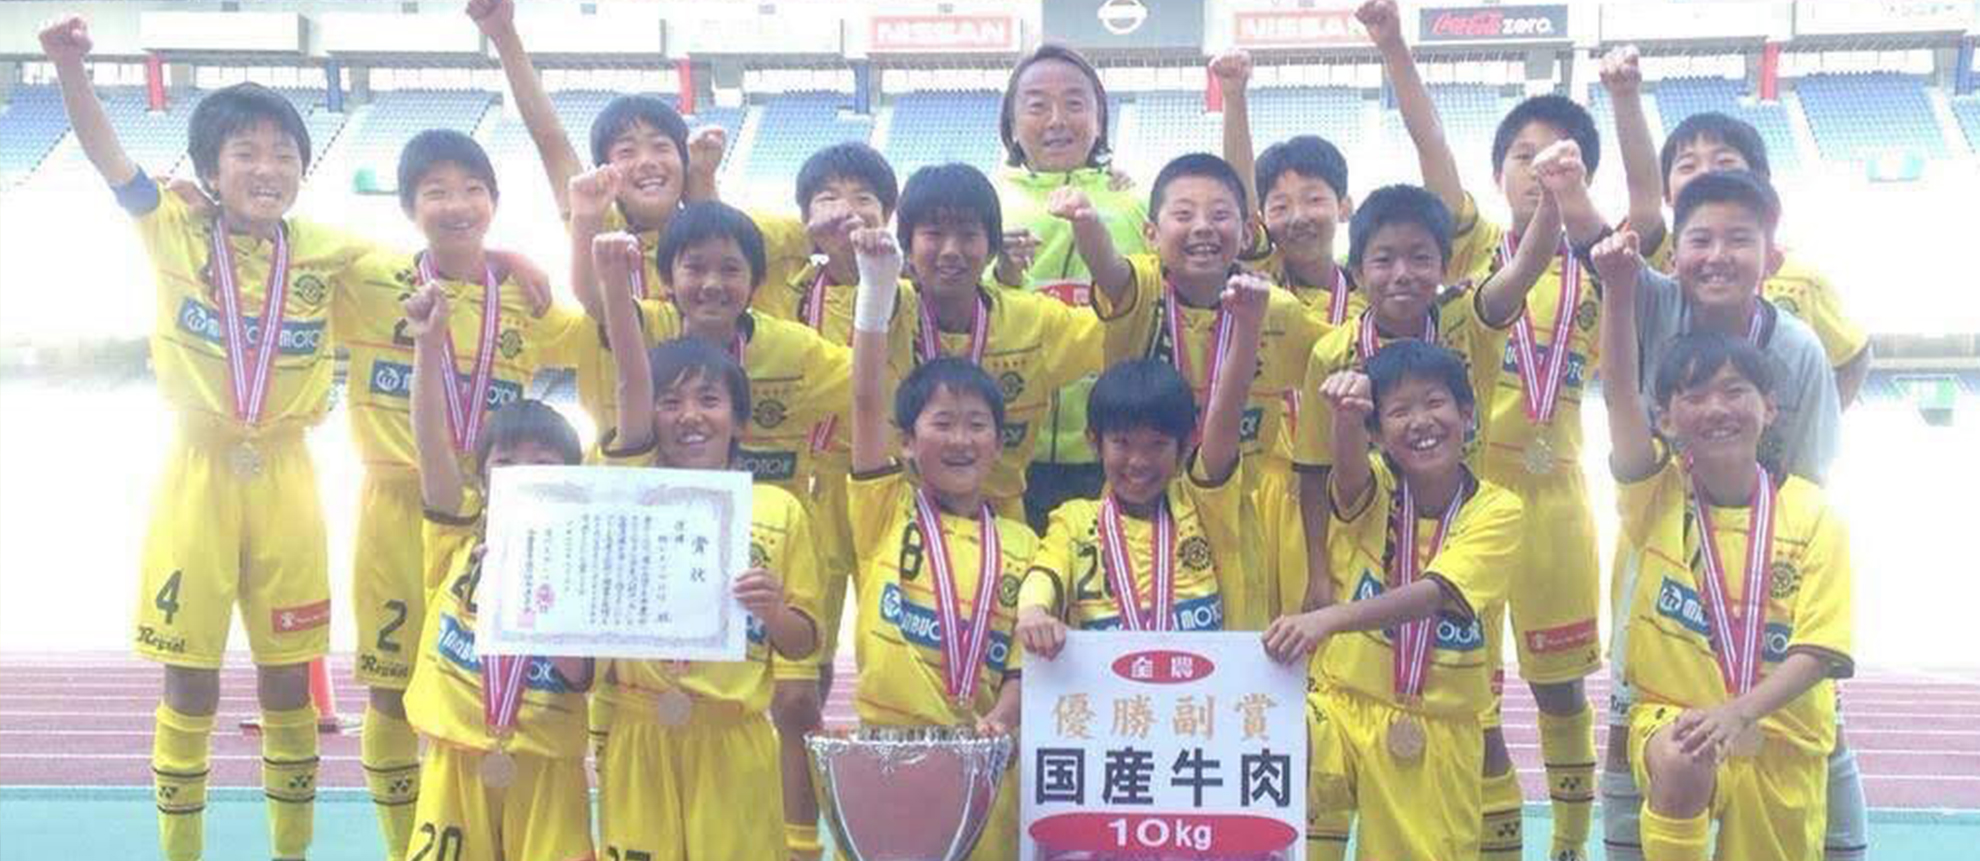 平井颯馬のサッカーオンラインスクール